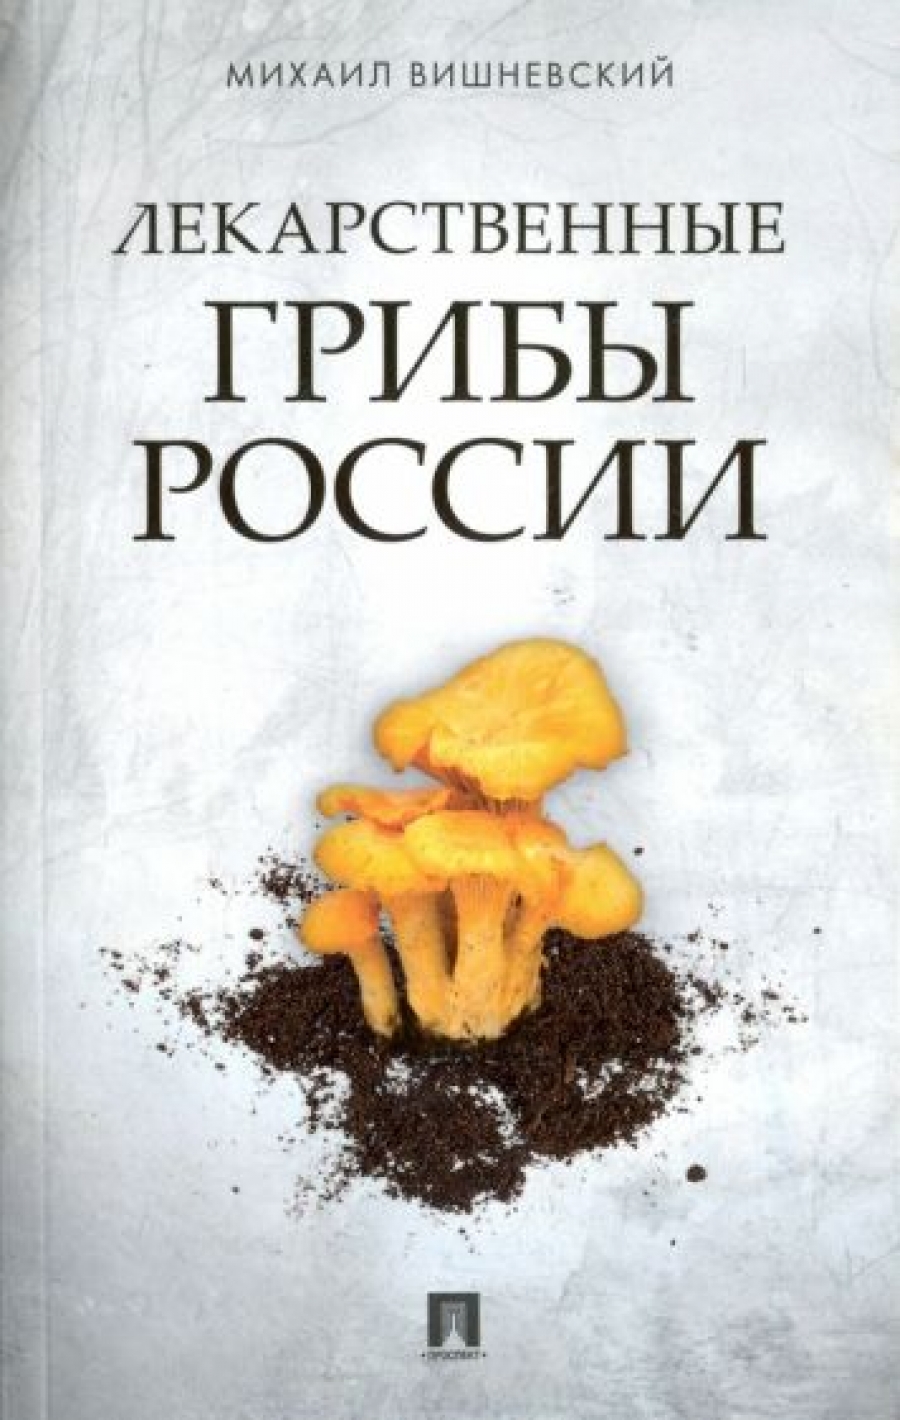 Вишневский М.В. Лекарственные грибы России 